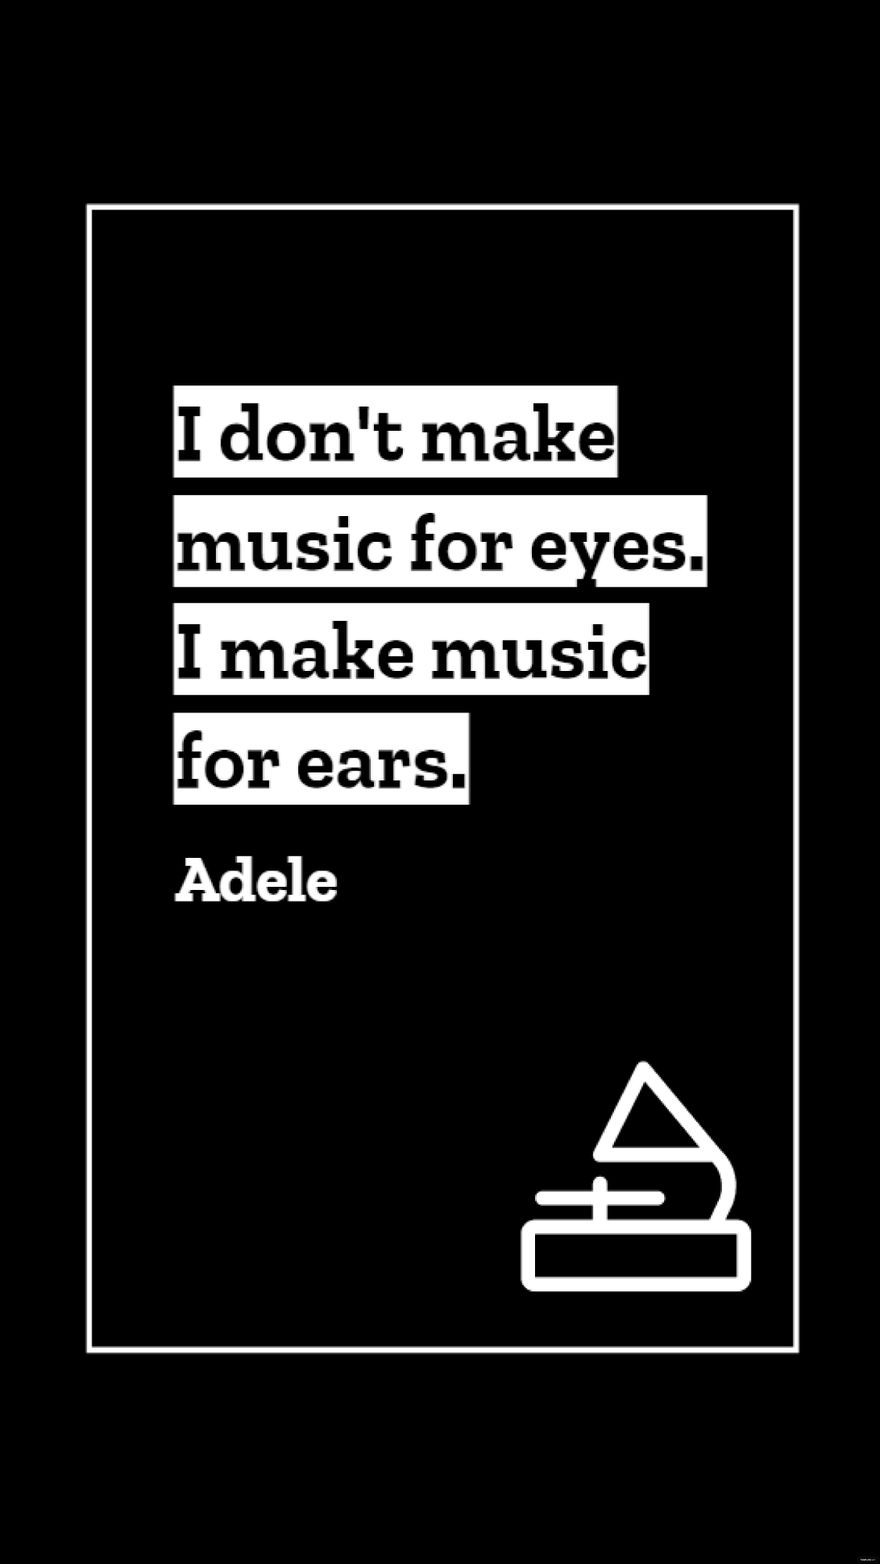 Adele - I don't make music for eyes. I make music for ears.